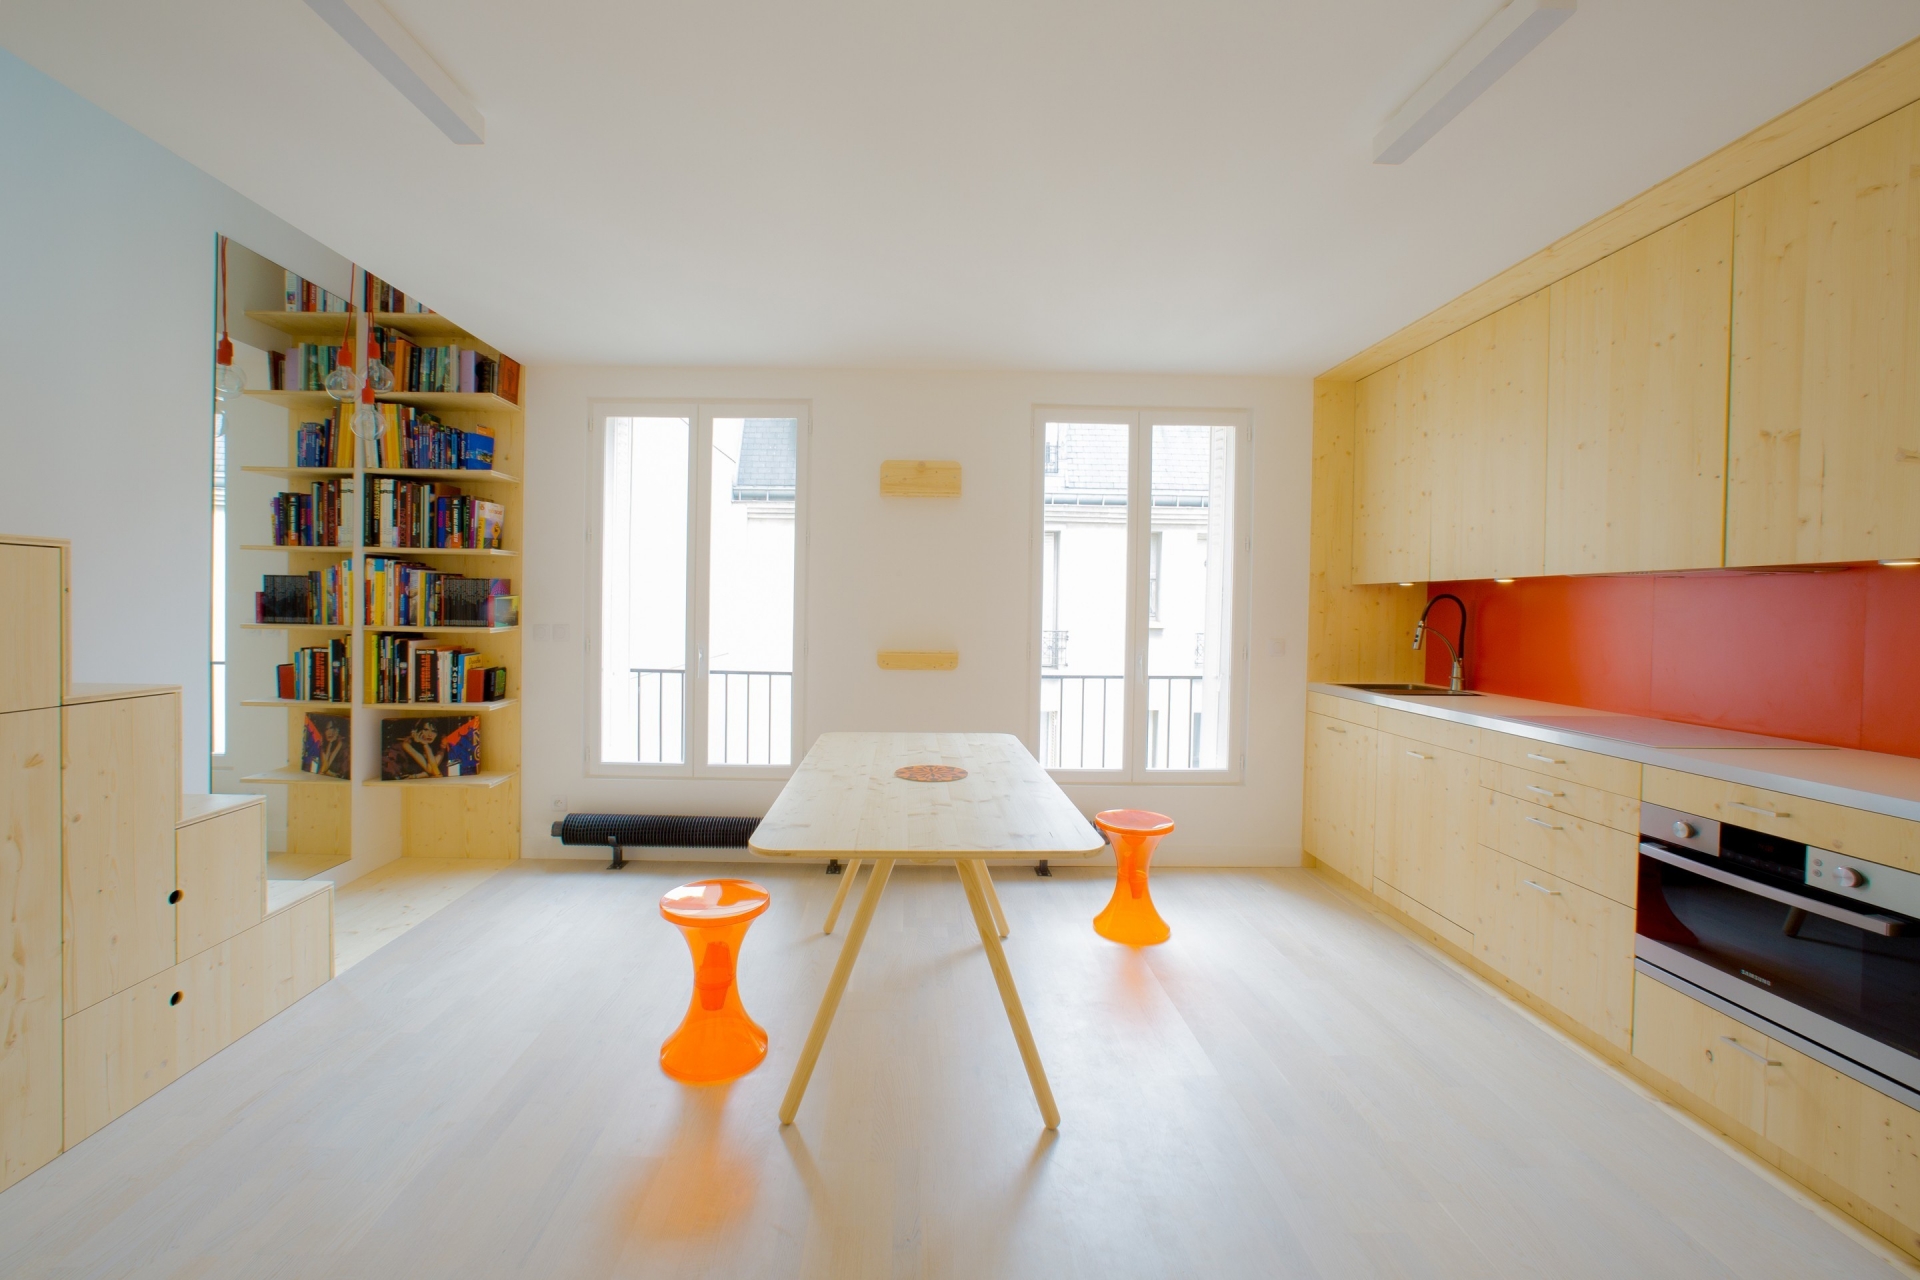 Chiếc bàn bằng gỗ tươi sáng kết hợp cùng ghế ngồi màu cam nổi bật, vừa là “phòng ăn” đồng thời cũng trở thành “phòng khách” siêu tiện lợi.